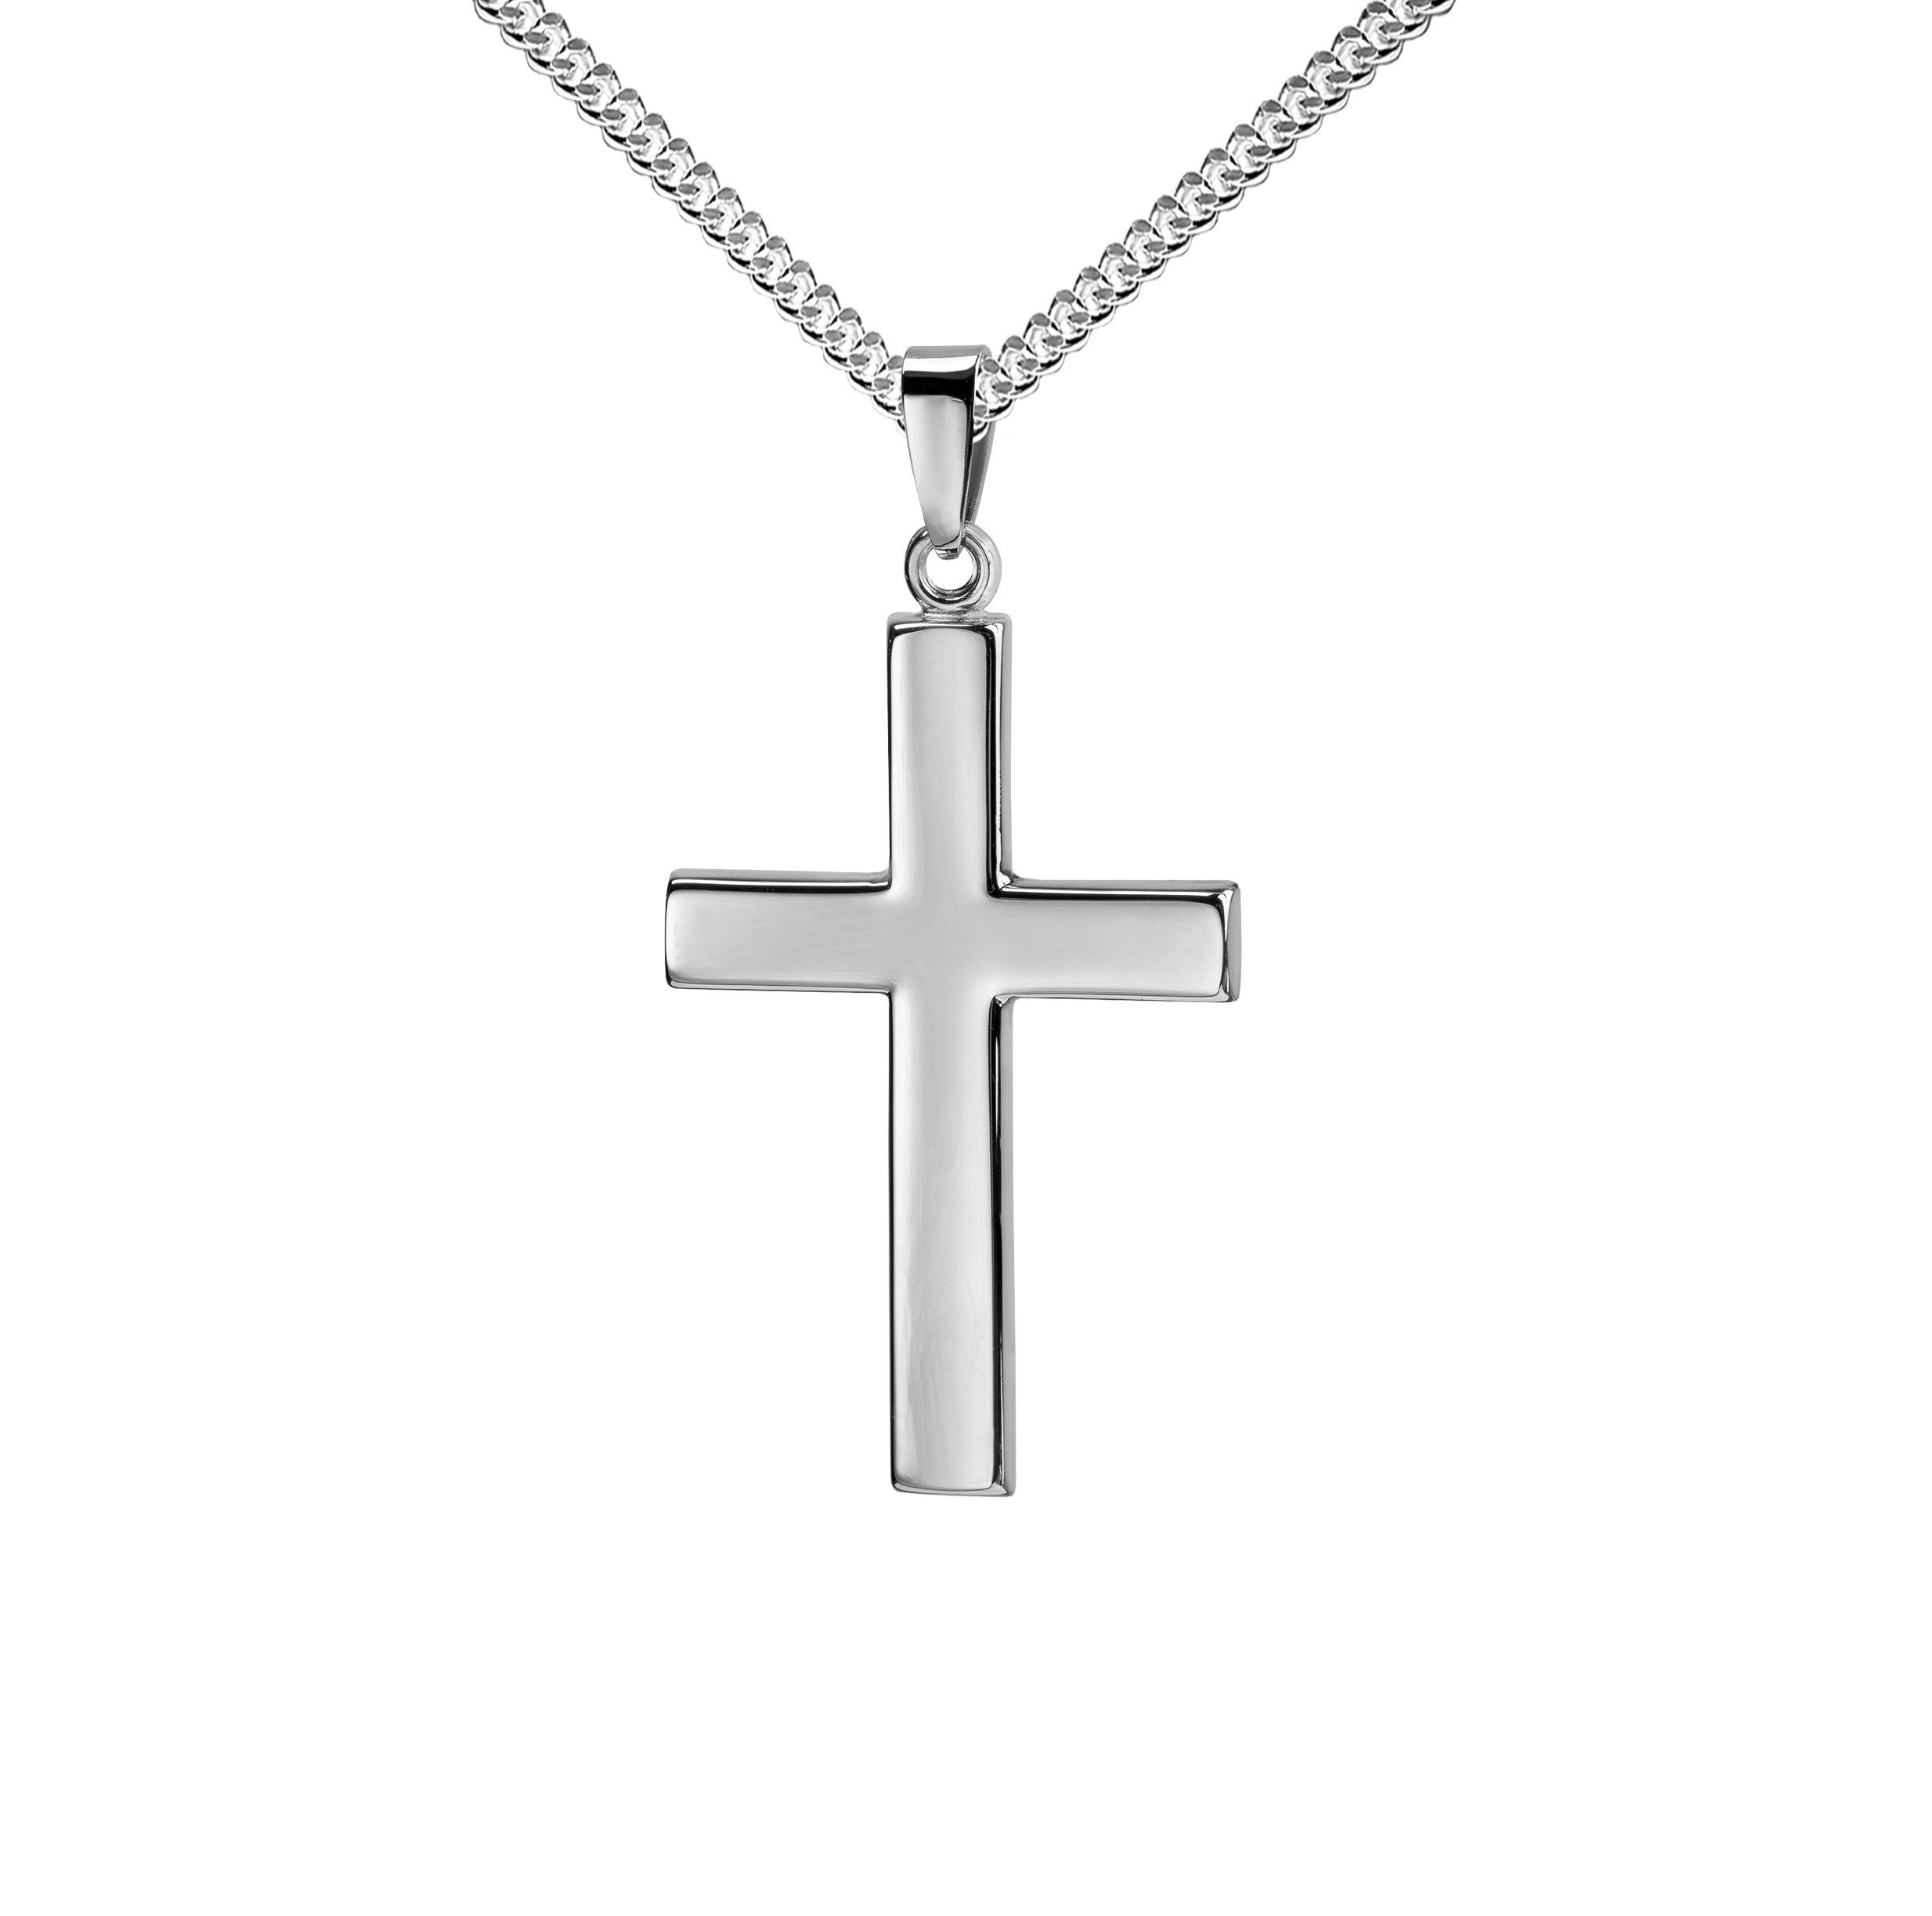 JEVELION Kreuzkette großer Kreuzanhänger 925 Silber - Made in Germany ( Silberkreuz, für Damen und Herren), Mit Silberkette 925 - Länge wählbar 36  - 70 cm oder ohne Kette.